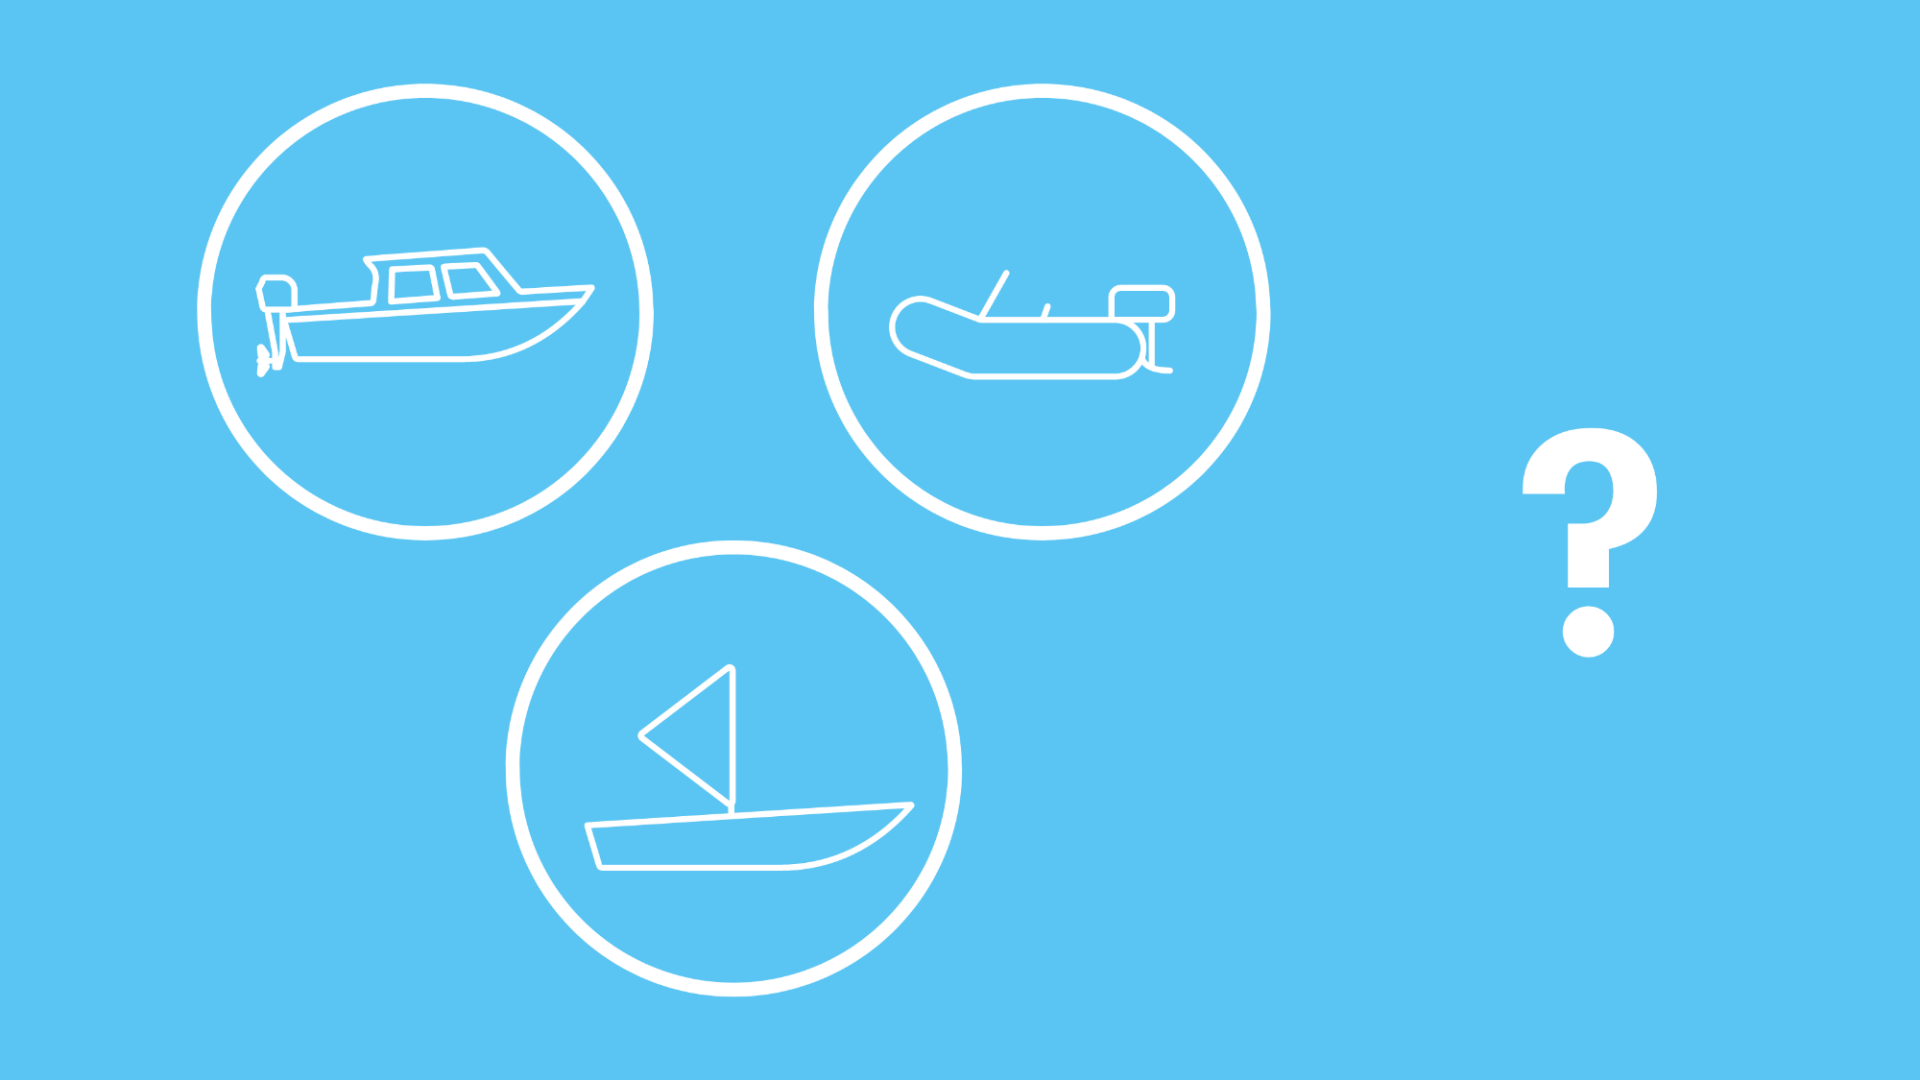 Die Grafik zeigt ein Motorboot, ein Segelboot und ein Schlauchboot in Icon-Form. Ein Fragezeichen daneben symbolisiert die Frage, welche Boote man ohne Führerschein fahren darf. 